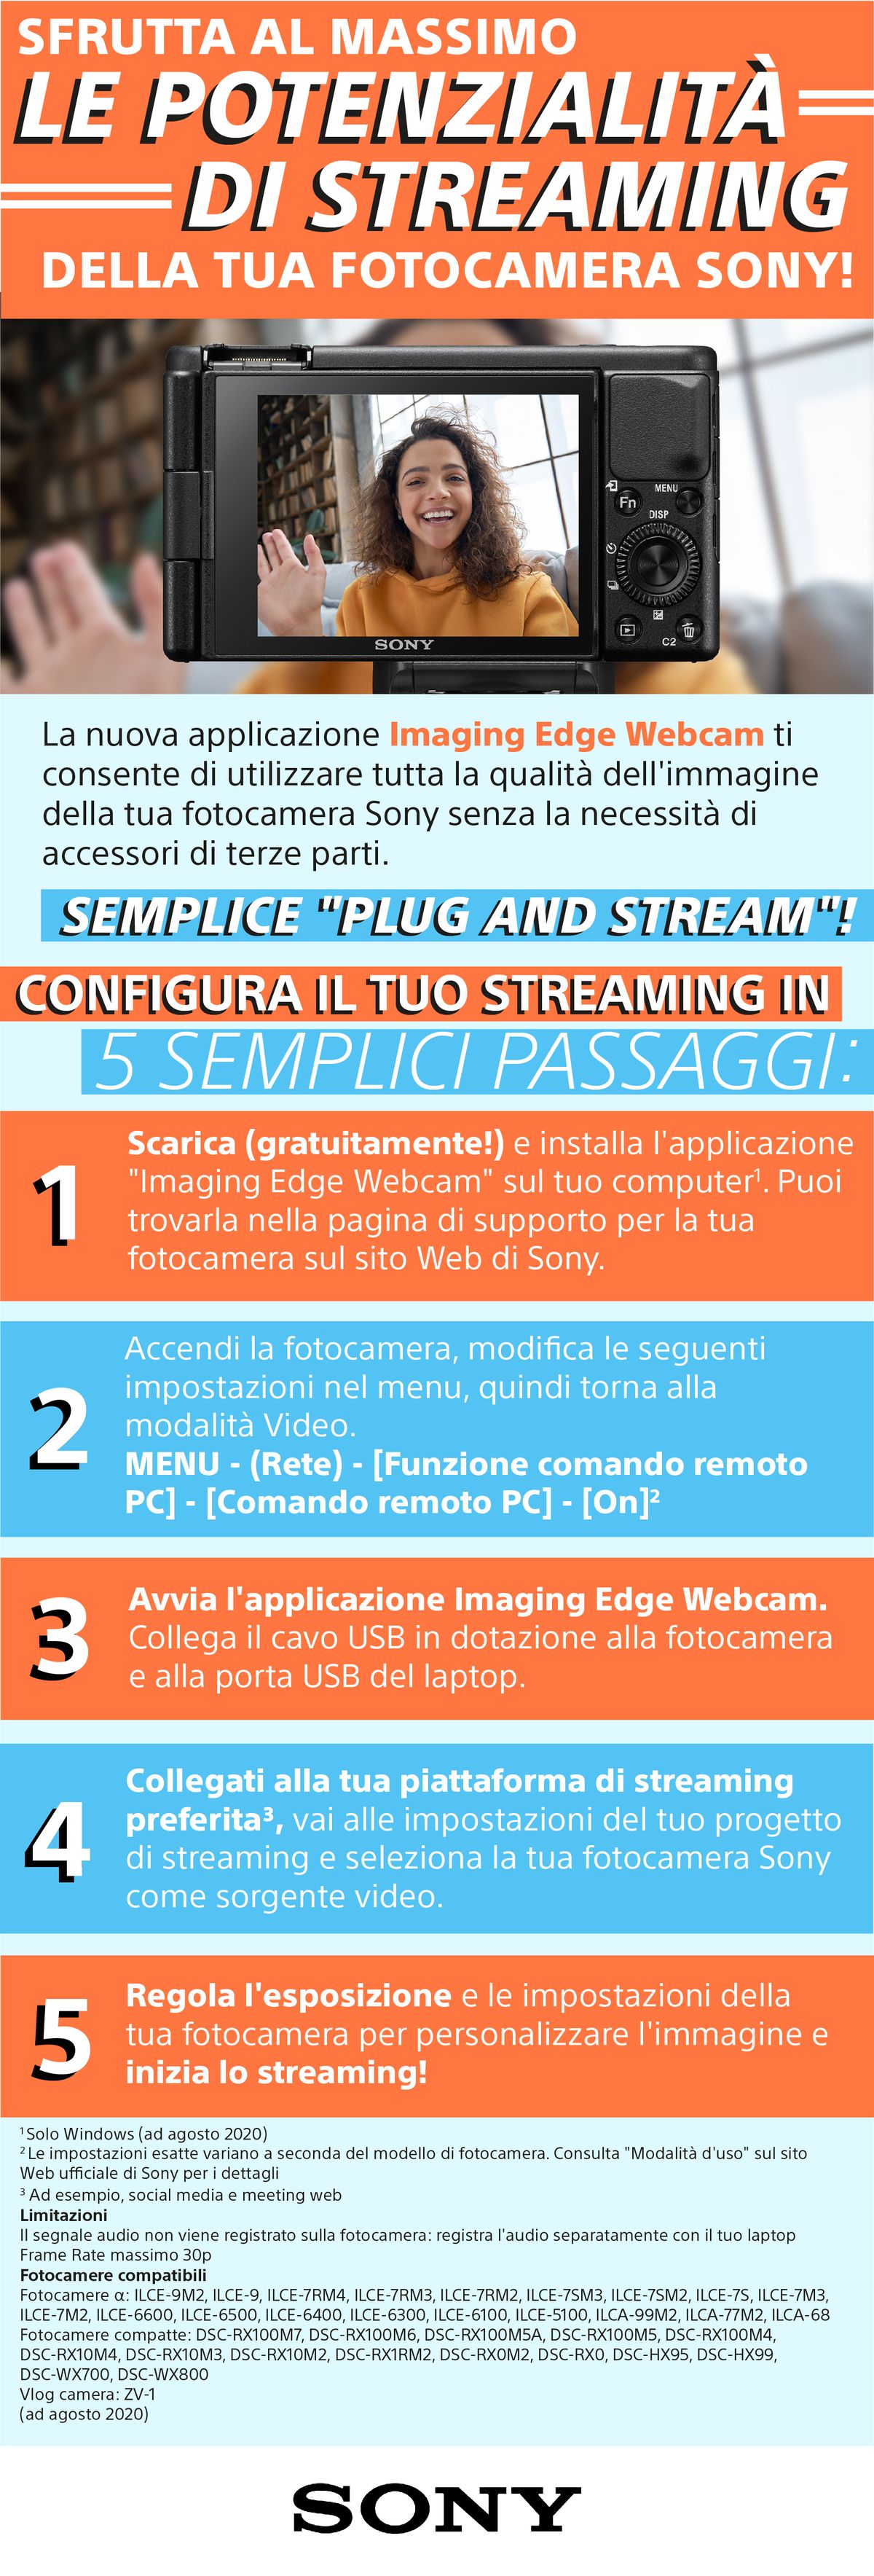 Imaging Edge Webcam Infographic_Italian.jpg